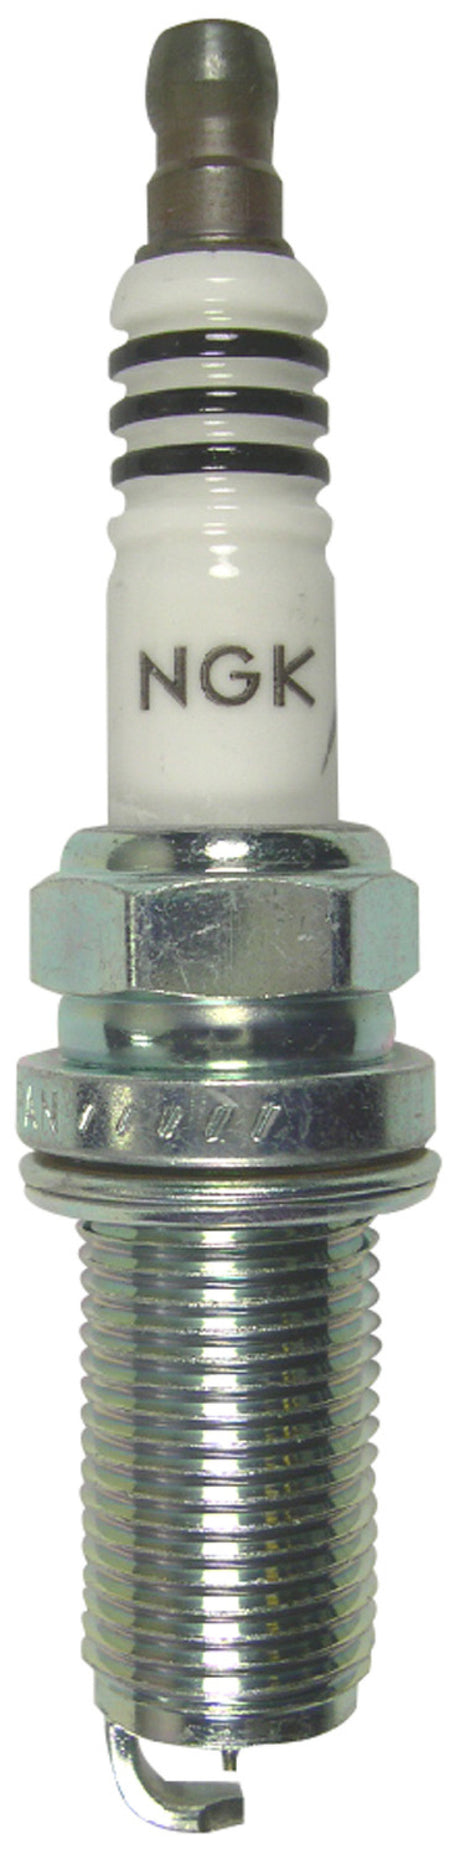 NGK Iridium Spark Plug Box of 4 (LFR7AIX)